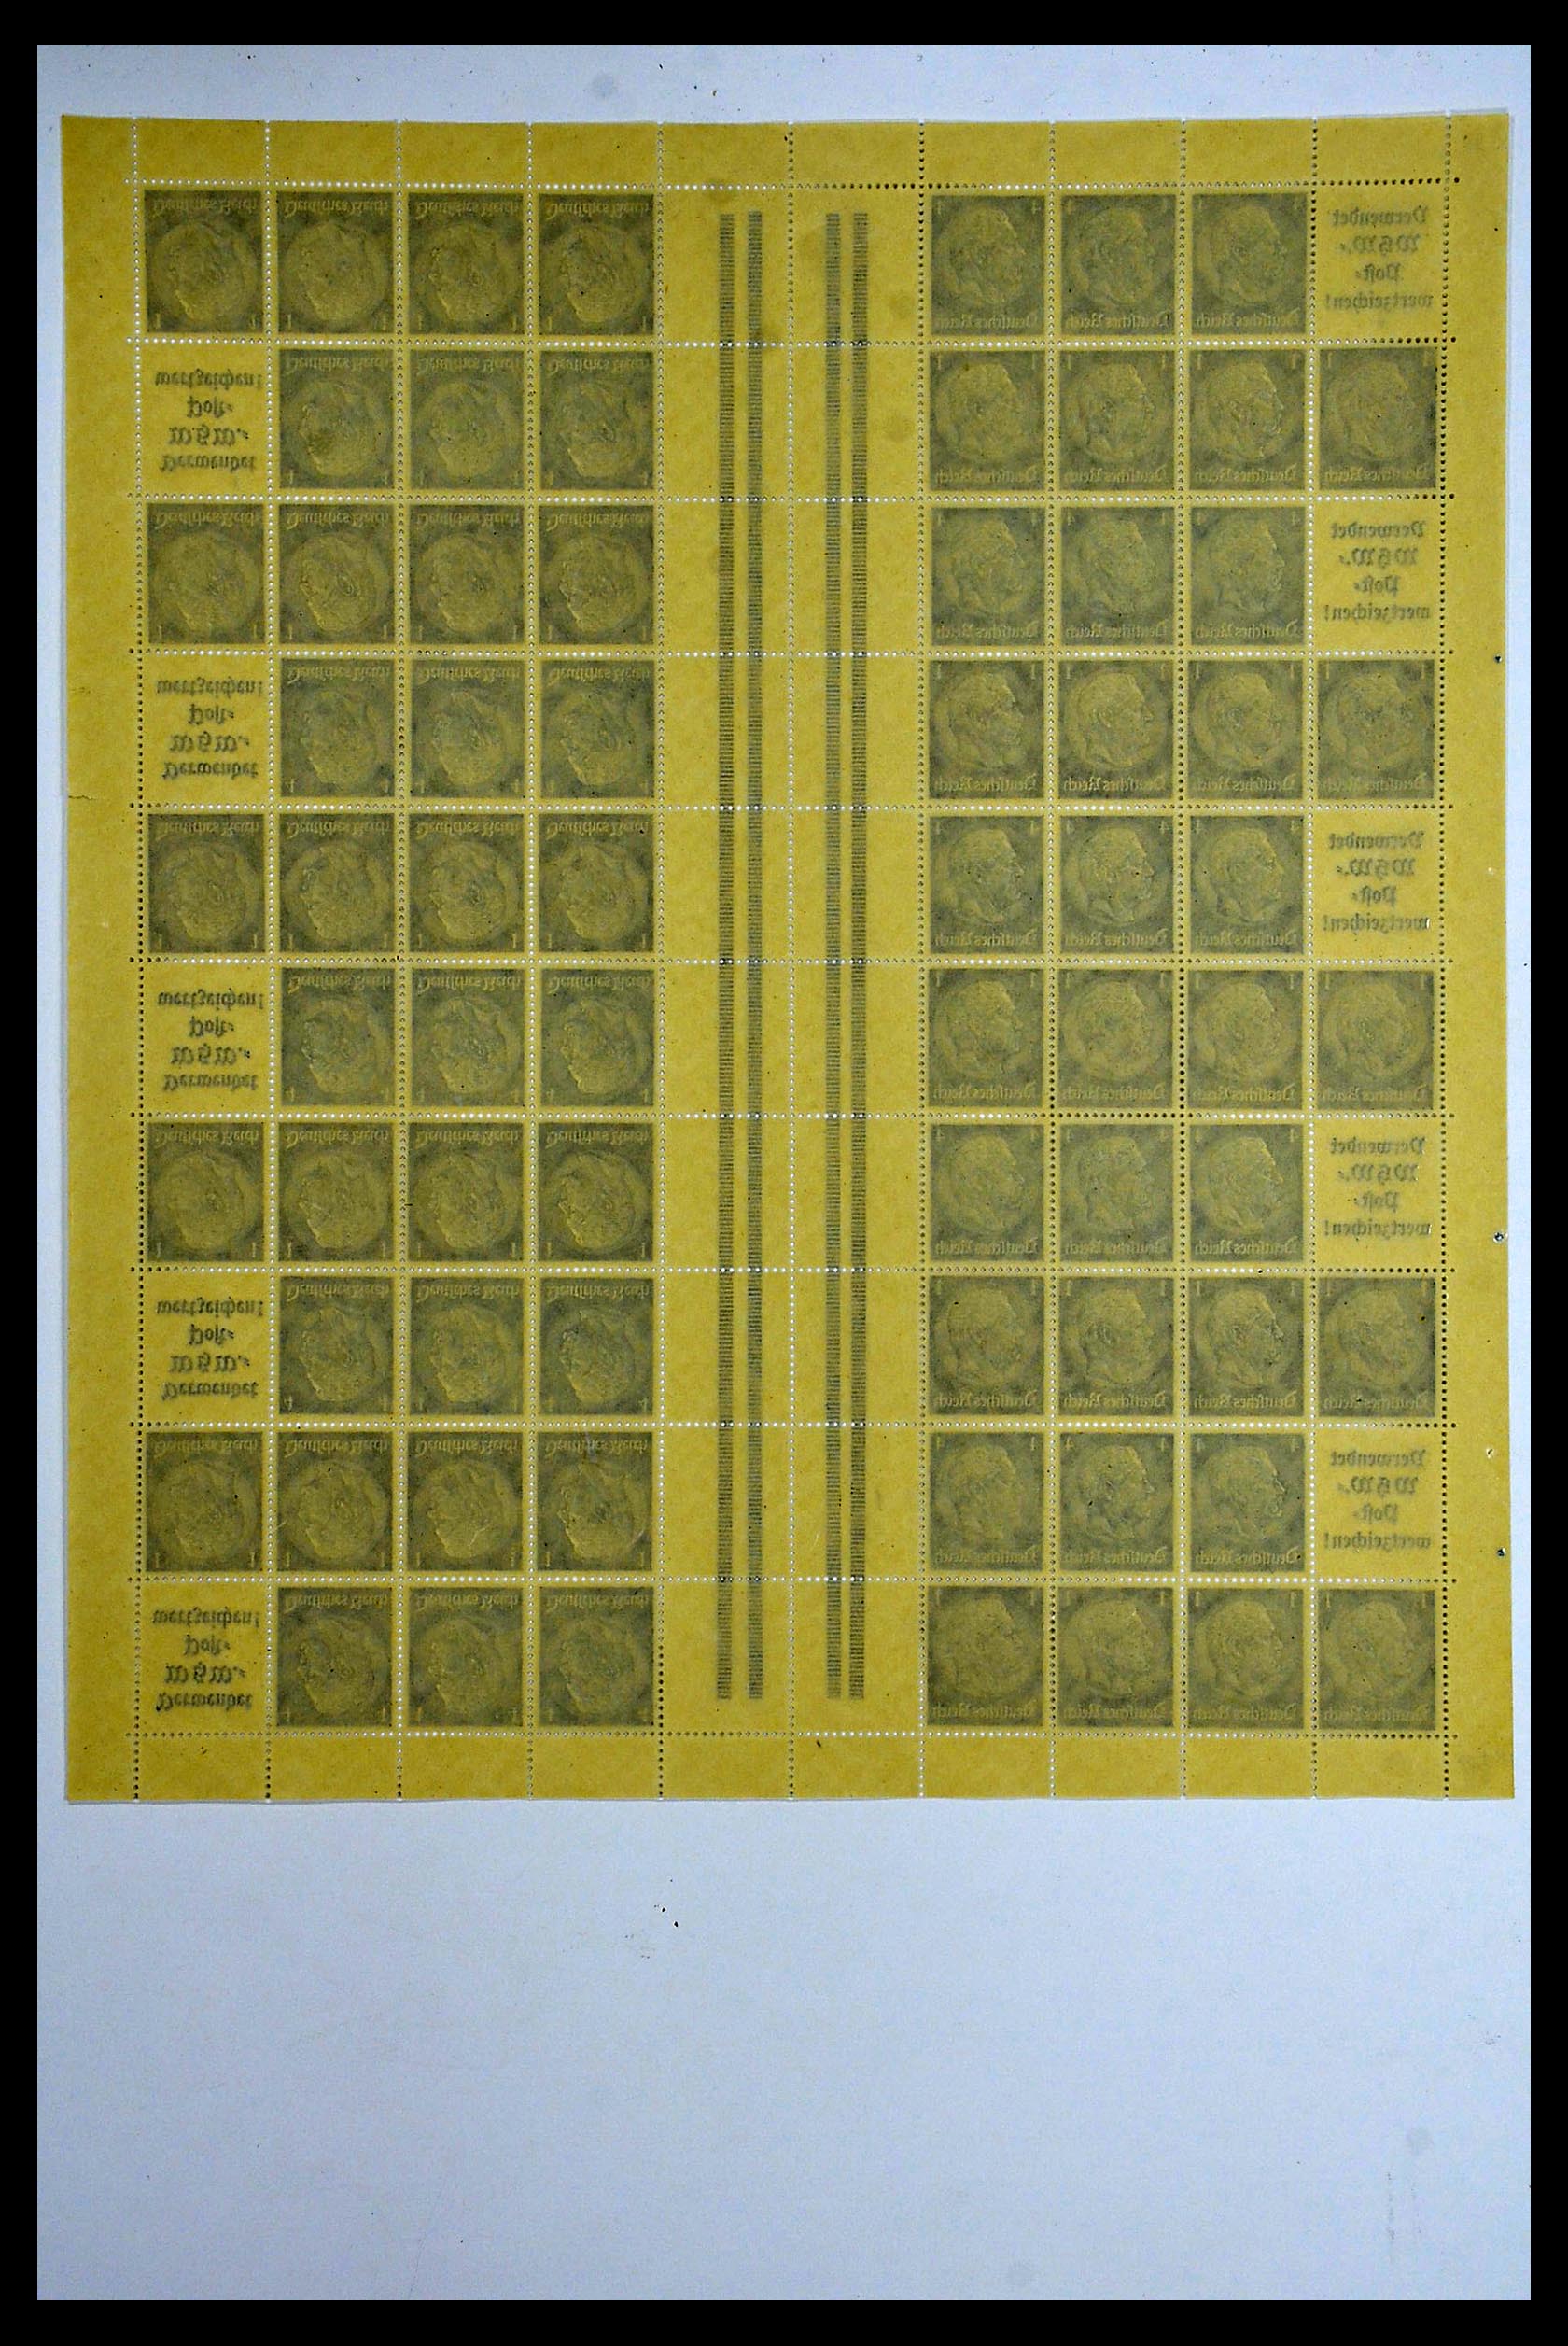 34164 032 - Stamp collection 34164 German Reich Markenheftchenbogen 1933-1942.